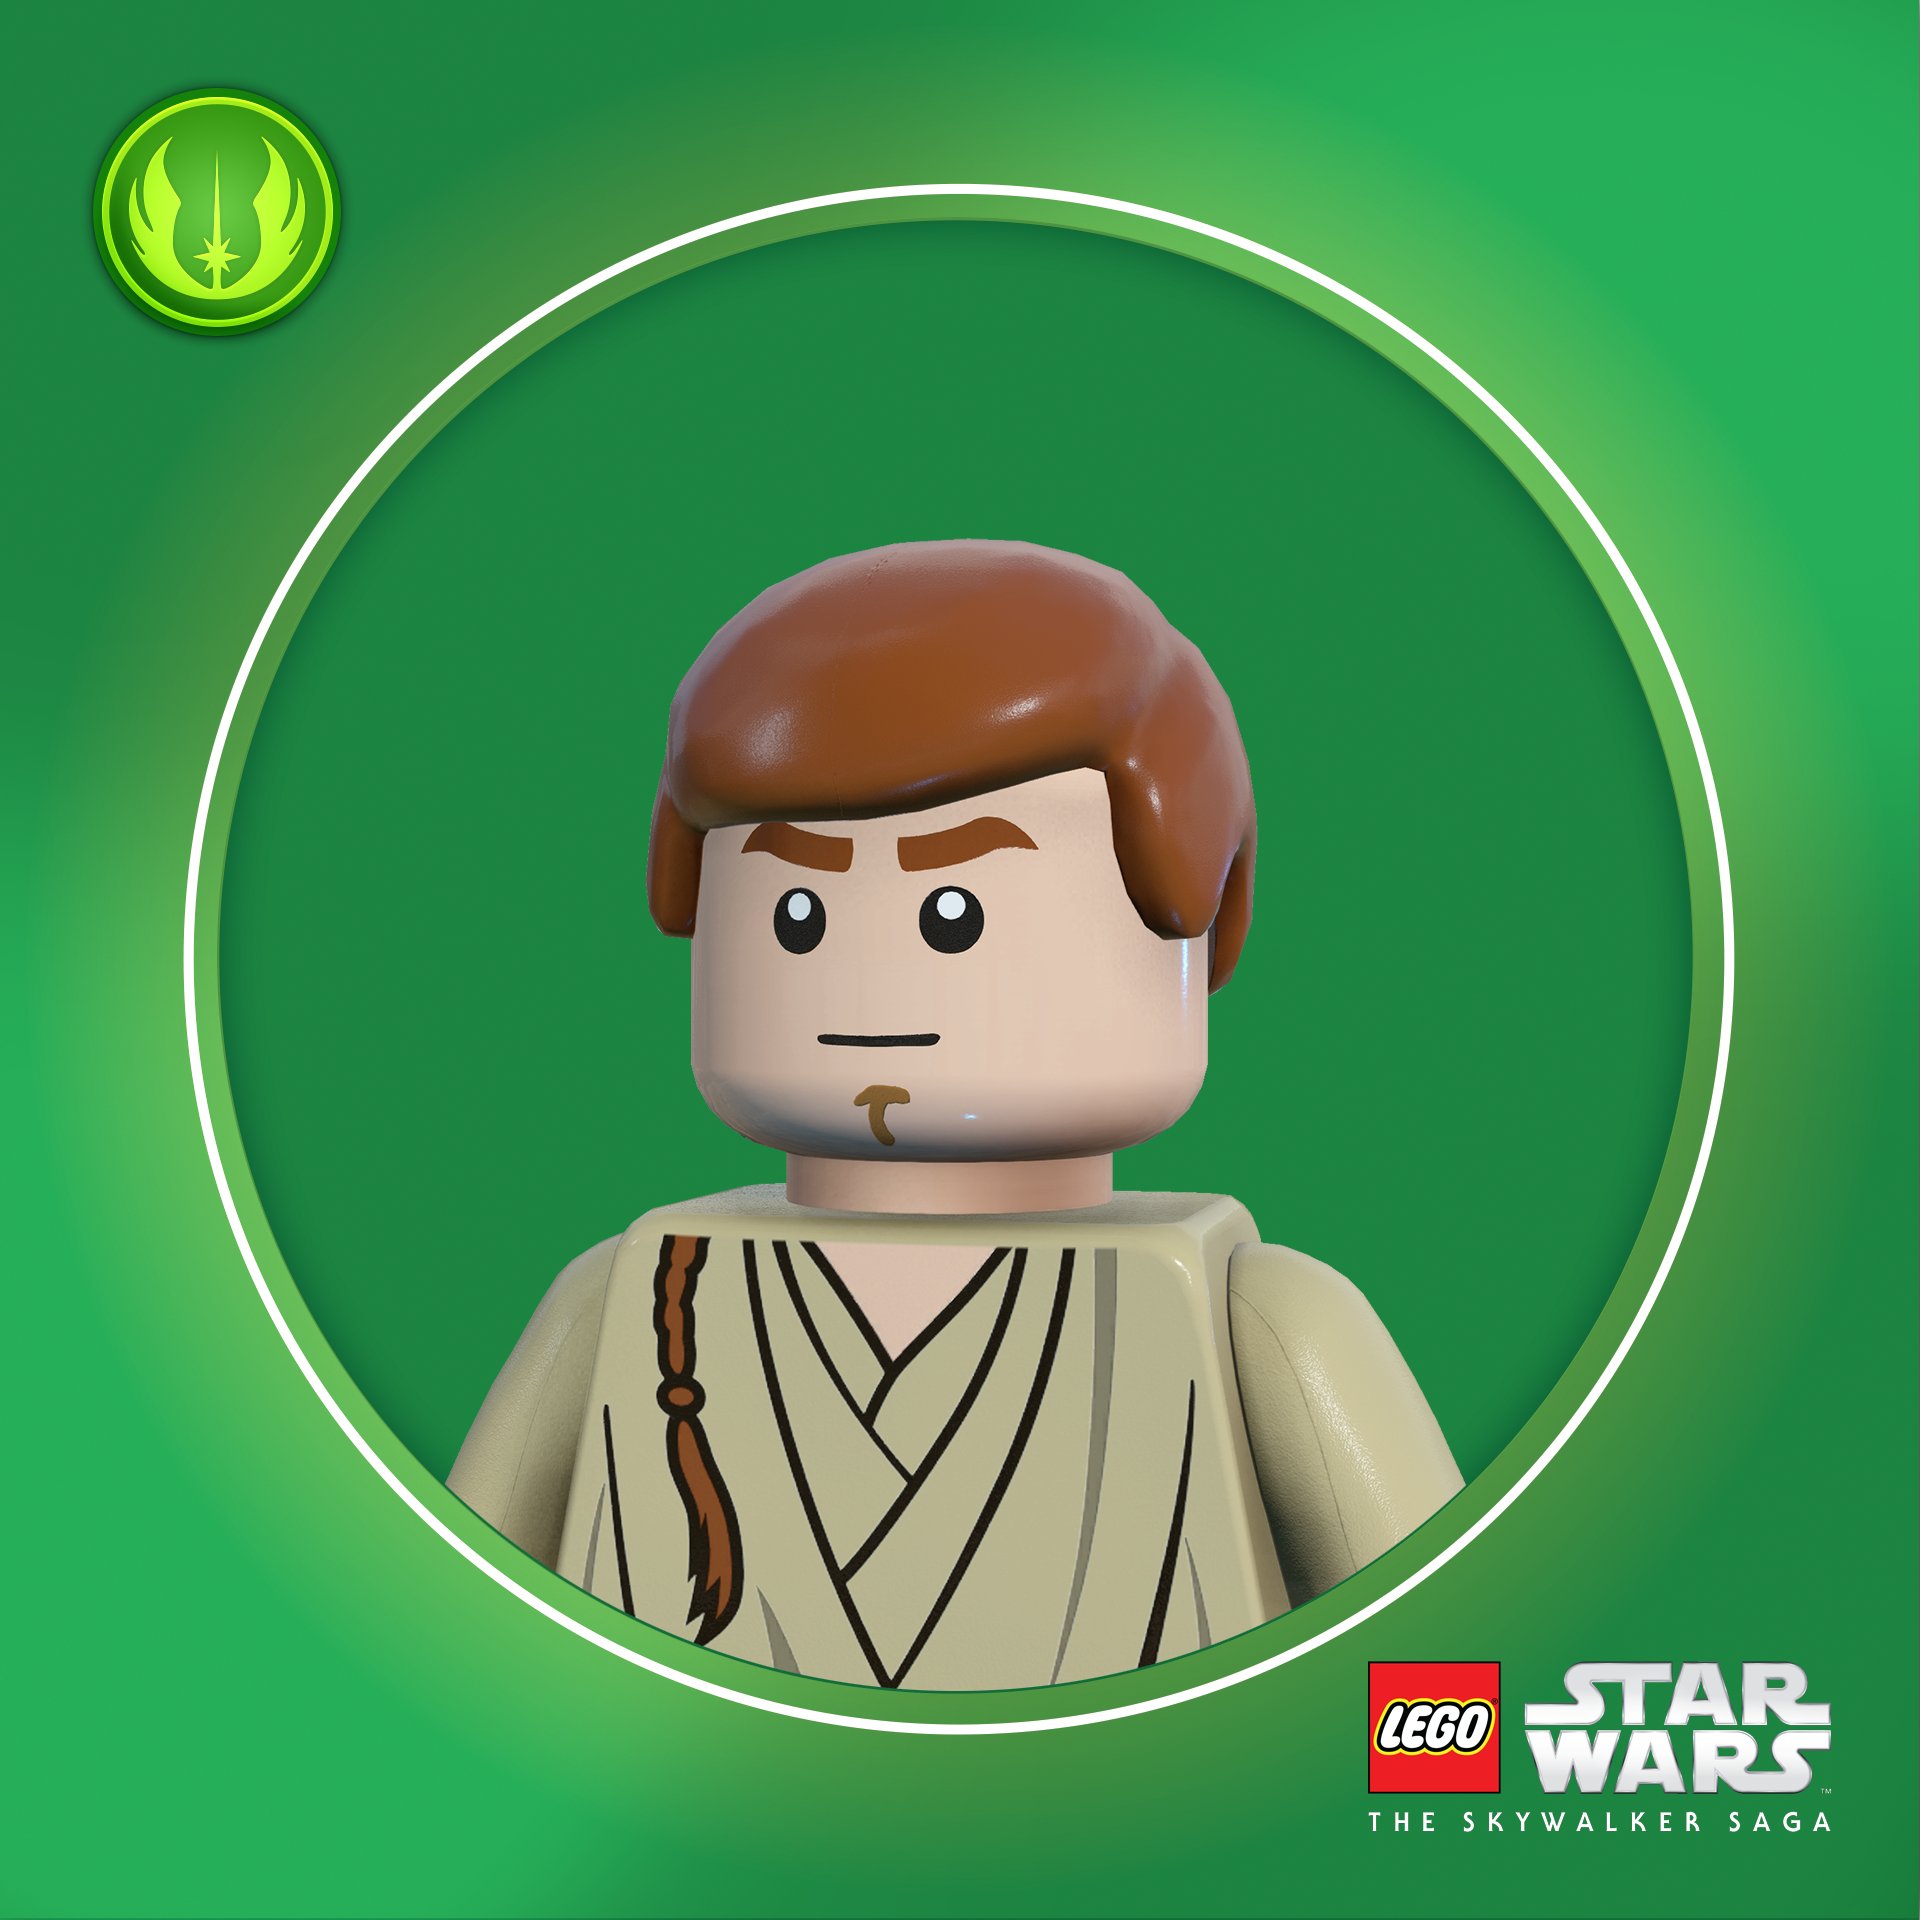 LEGO Star Wars Game Hear People Need A Pfp Of Kenobi! Here's Obi Wan, Obi Two, And Obi Three! #LEGOStarWarsGame